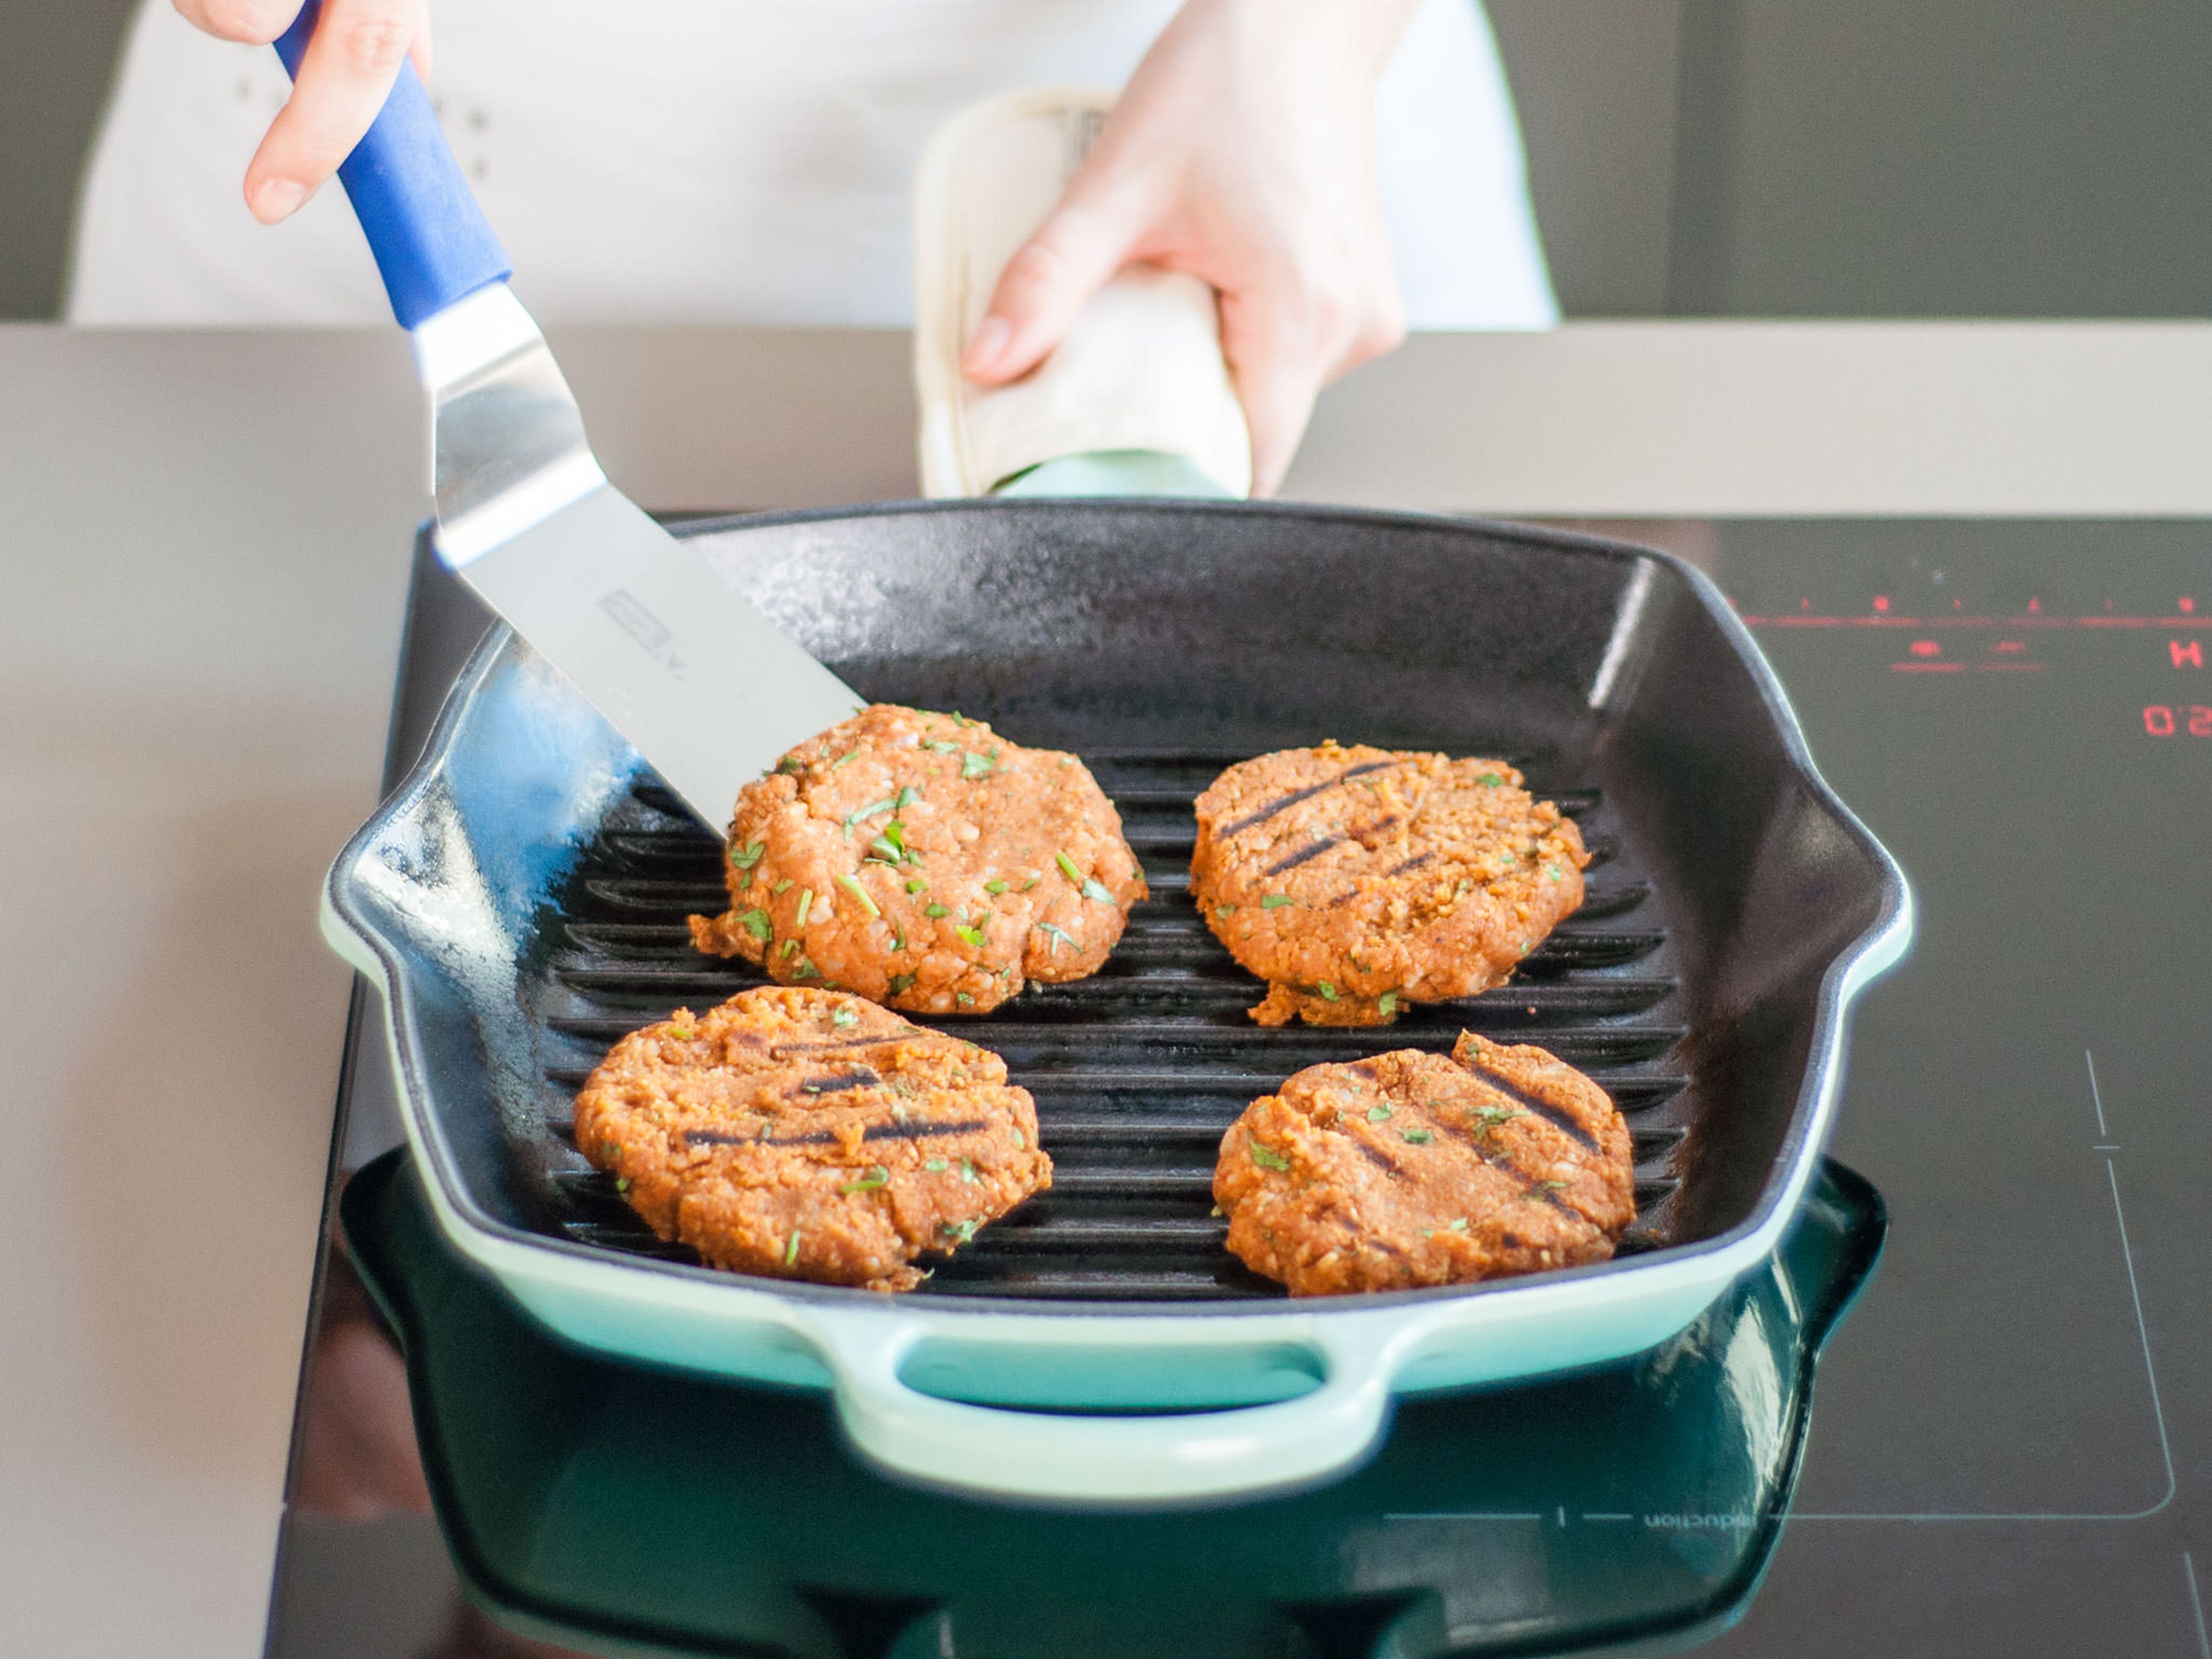 Grill oder Grillpfanne bei mittlerer Hitze erwärmen und mit etwas Öl bepinseln. Burgerbratlinge pro Seite ca. 2 – 3 Min. garen, vorsichtig wenden und Wärmezufuhr regulieren, damit sie nicht verbrennen. Beim Grill den Deckel auflegen.